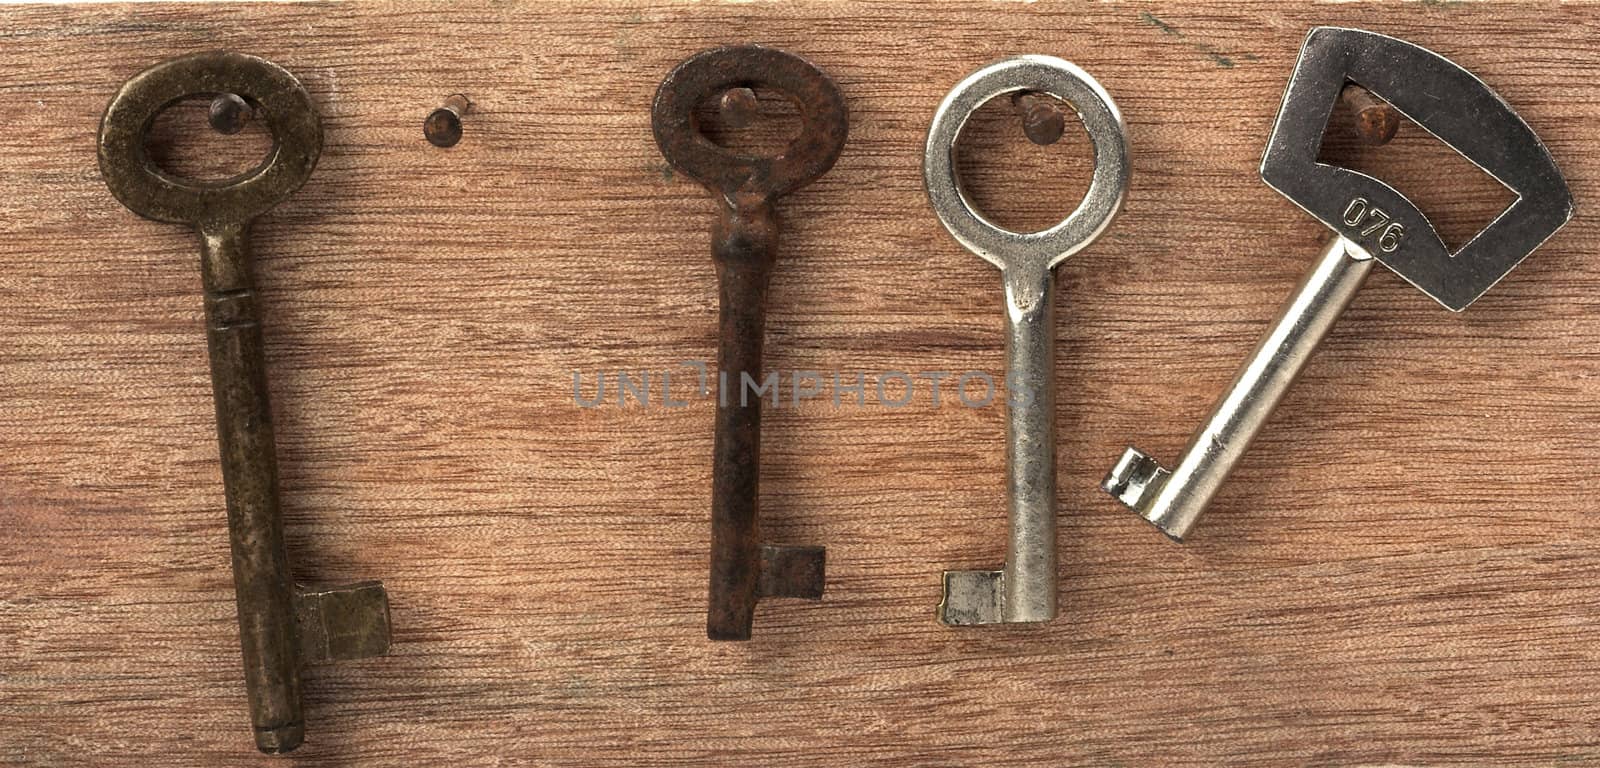  vintage keys by alexkosev